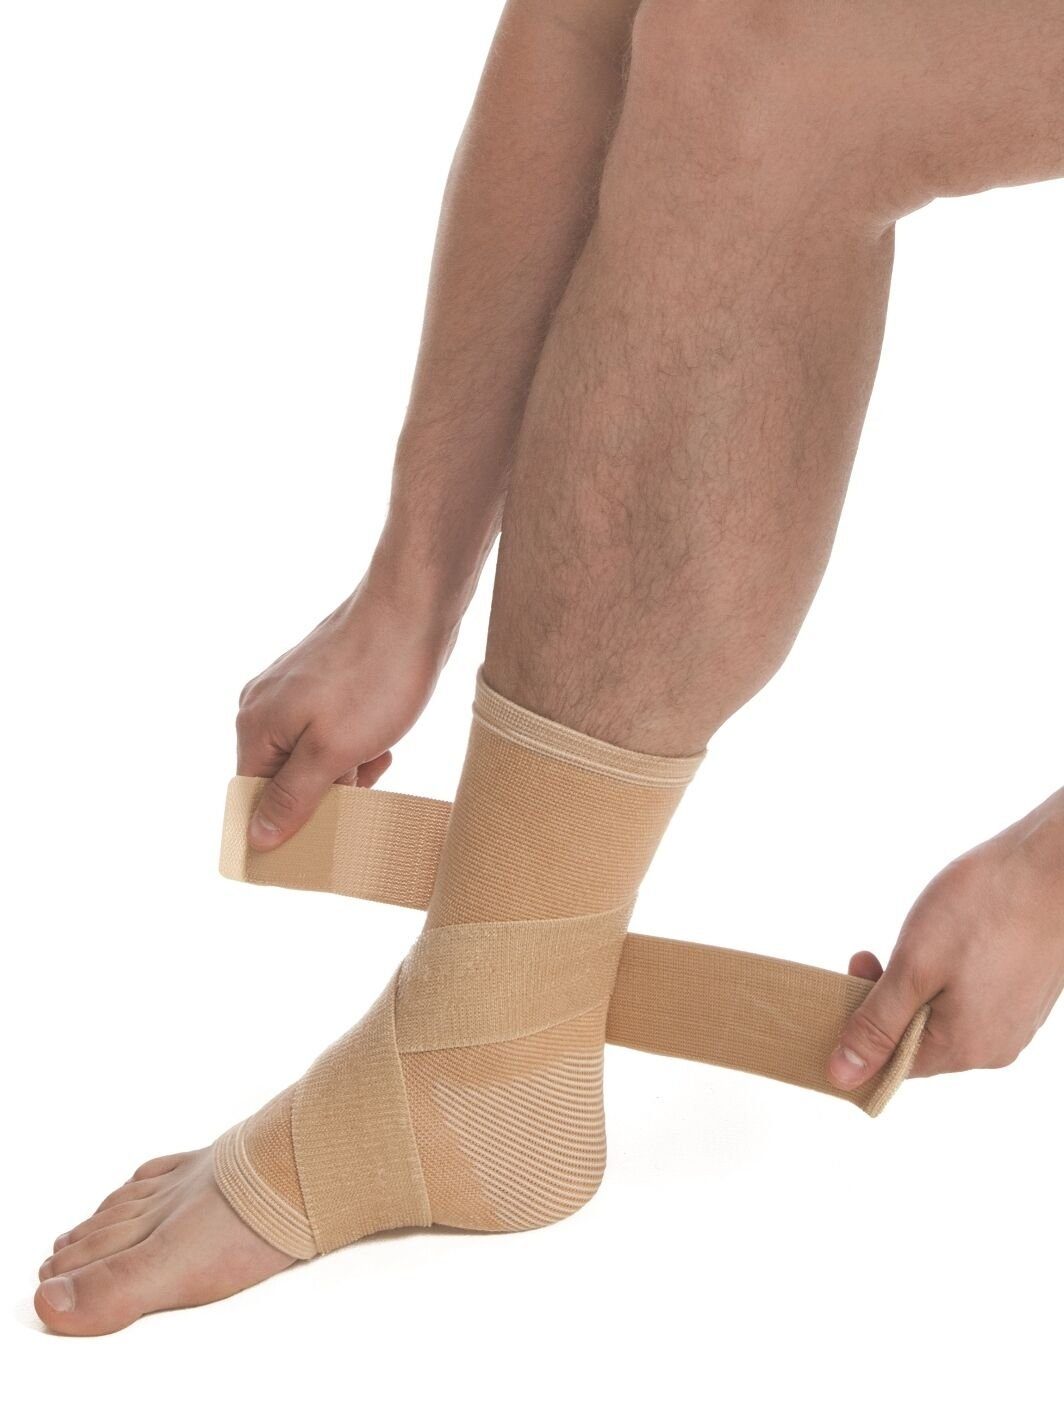 Bandage MedTex 7025, Strumpf Sprunggelenk Kompression Fuß Fixierung Fußbandage Kompression